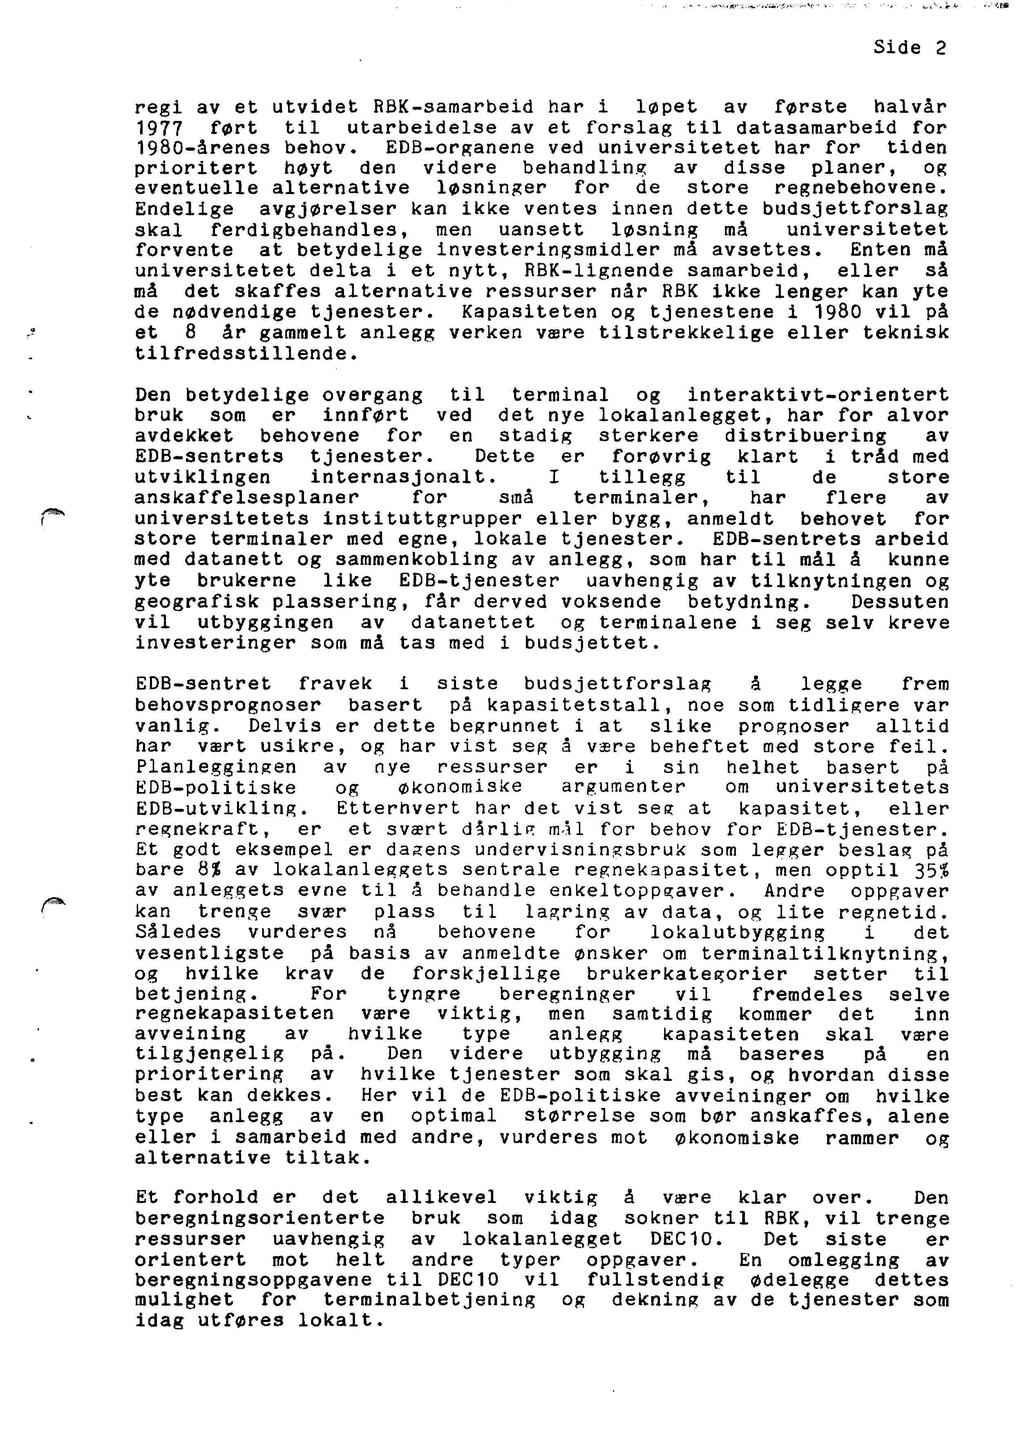 Side 2 regi av et utvidet RBK-samarbeid har i lflpet av frste halvar 1977 frt til utarbeidelse av et forslag til datasamarbeid for 198-arenes behov.